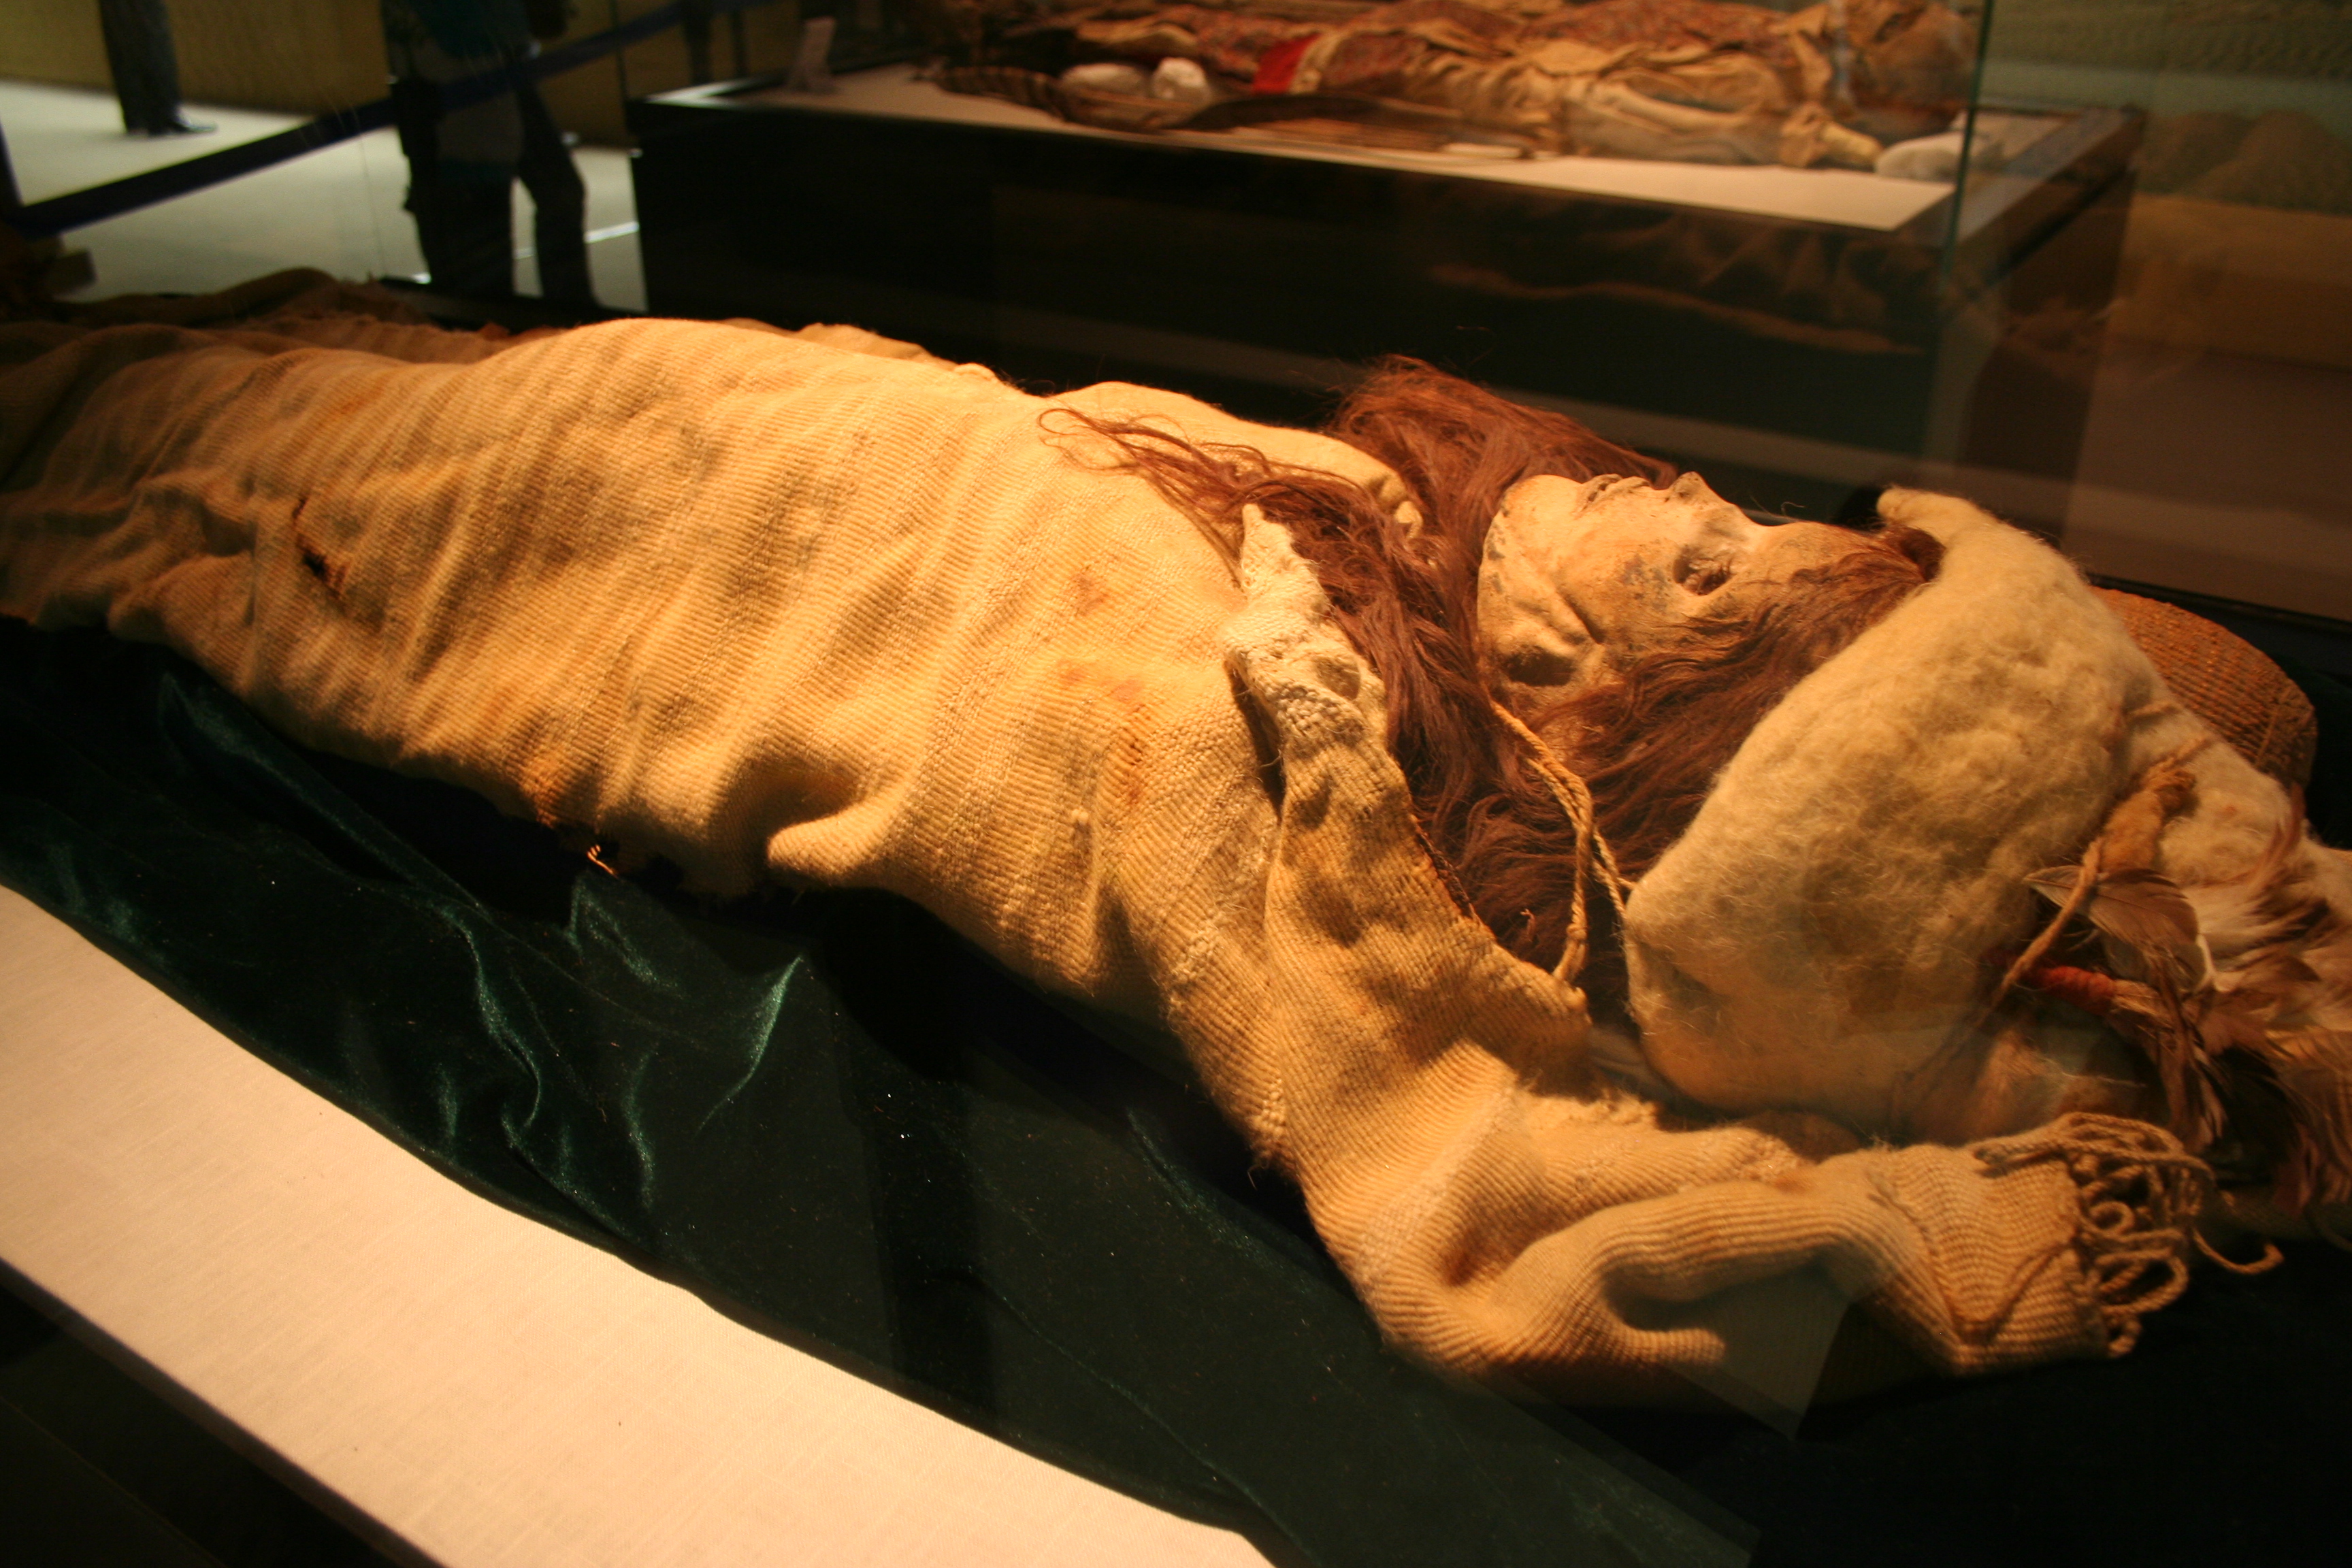 tarim basin mummies